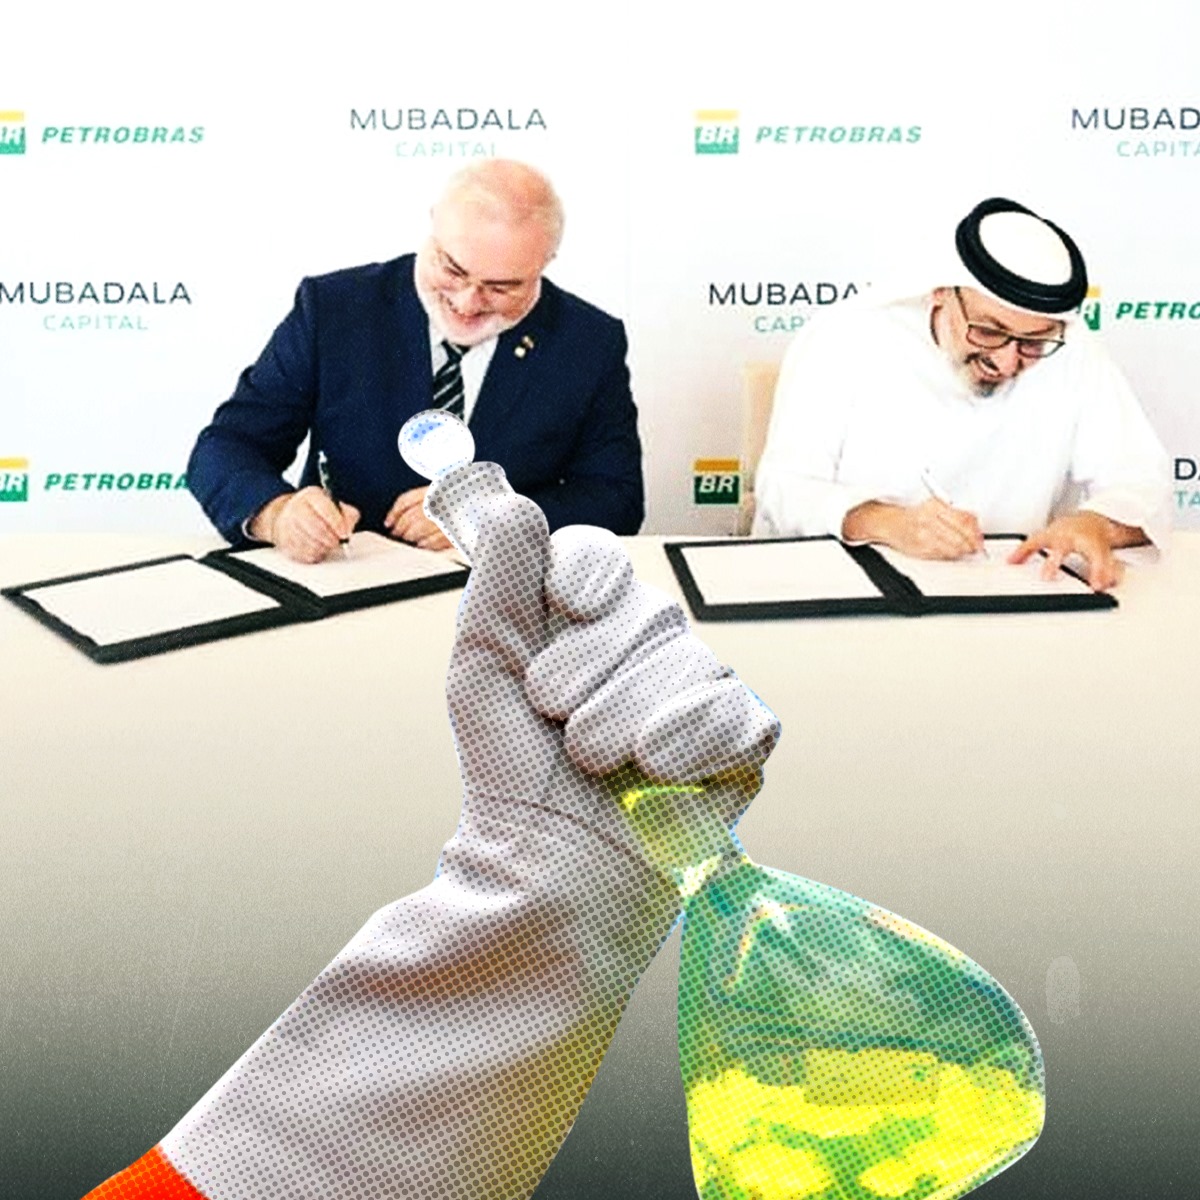 Petrobrás assina acordo com Mubadala para possíveis investimentos em biorrefino; FUP reivindica reestatização da RLAM